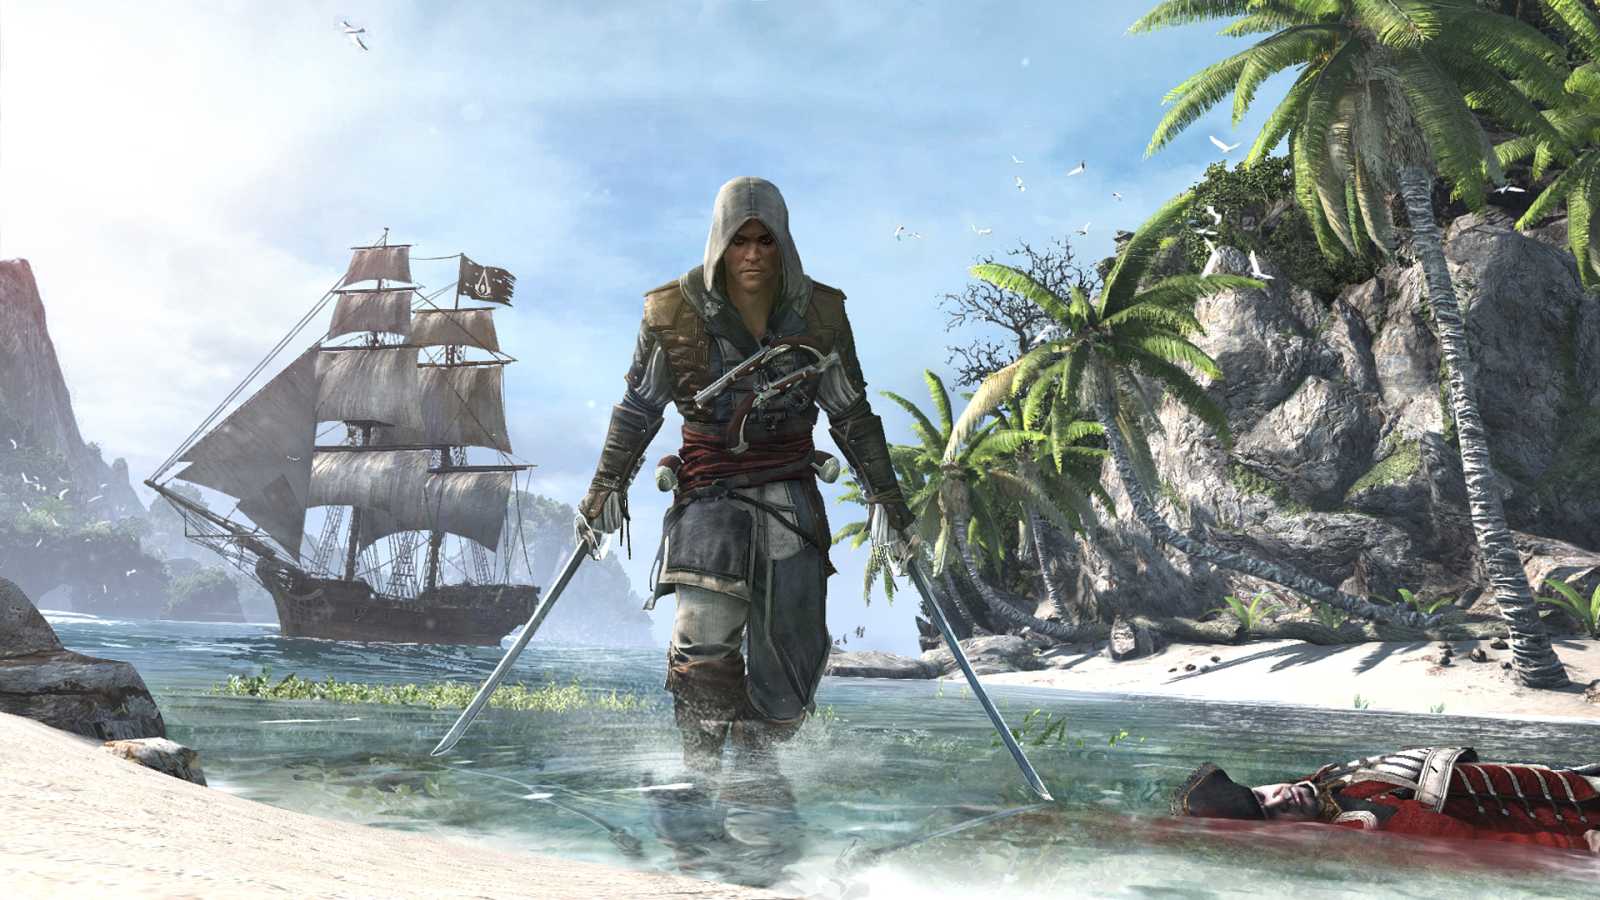 Assassin's Creed 4: Black Flag slaví 10. narozeniny. Hru si vyzkoušelo více než 34 milionů hráčů